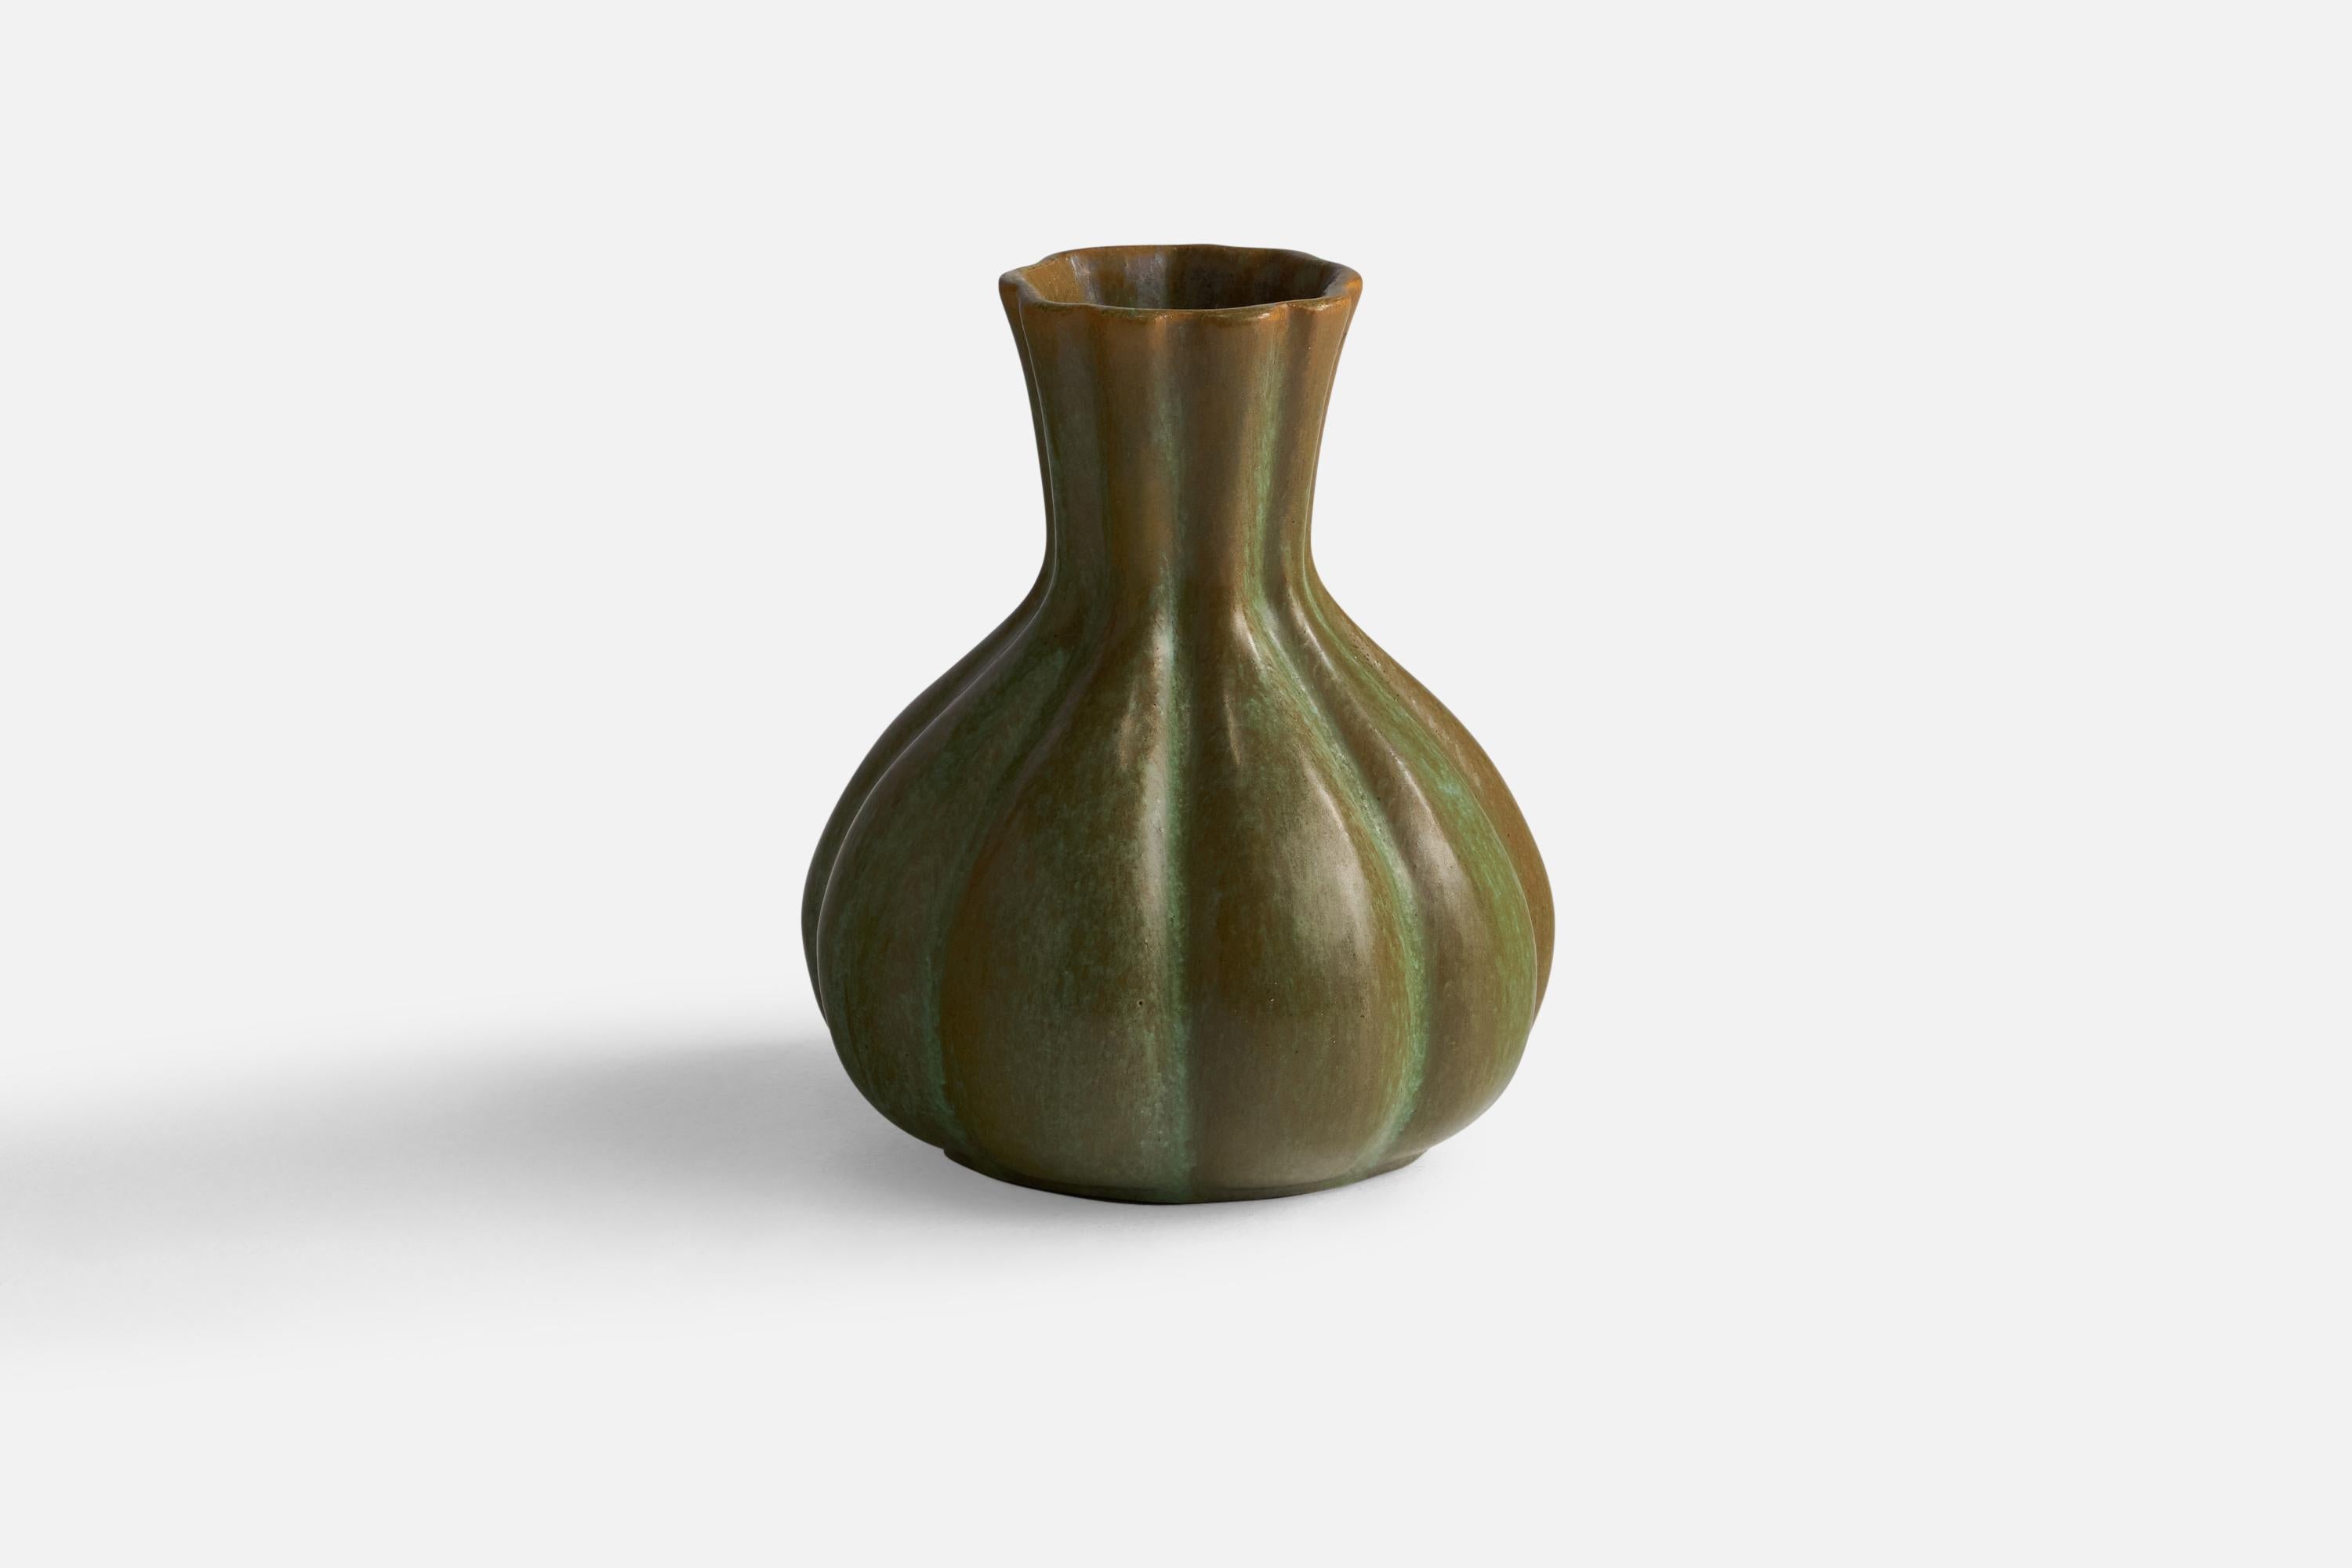 A green-glazed fluted vase designed and produced by Motala Lervarufabrik, Sweden, 1930s.